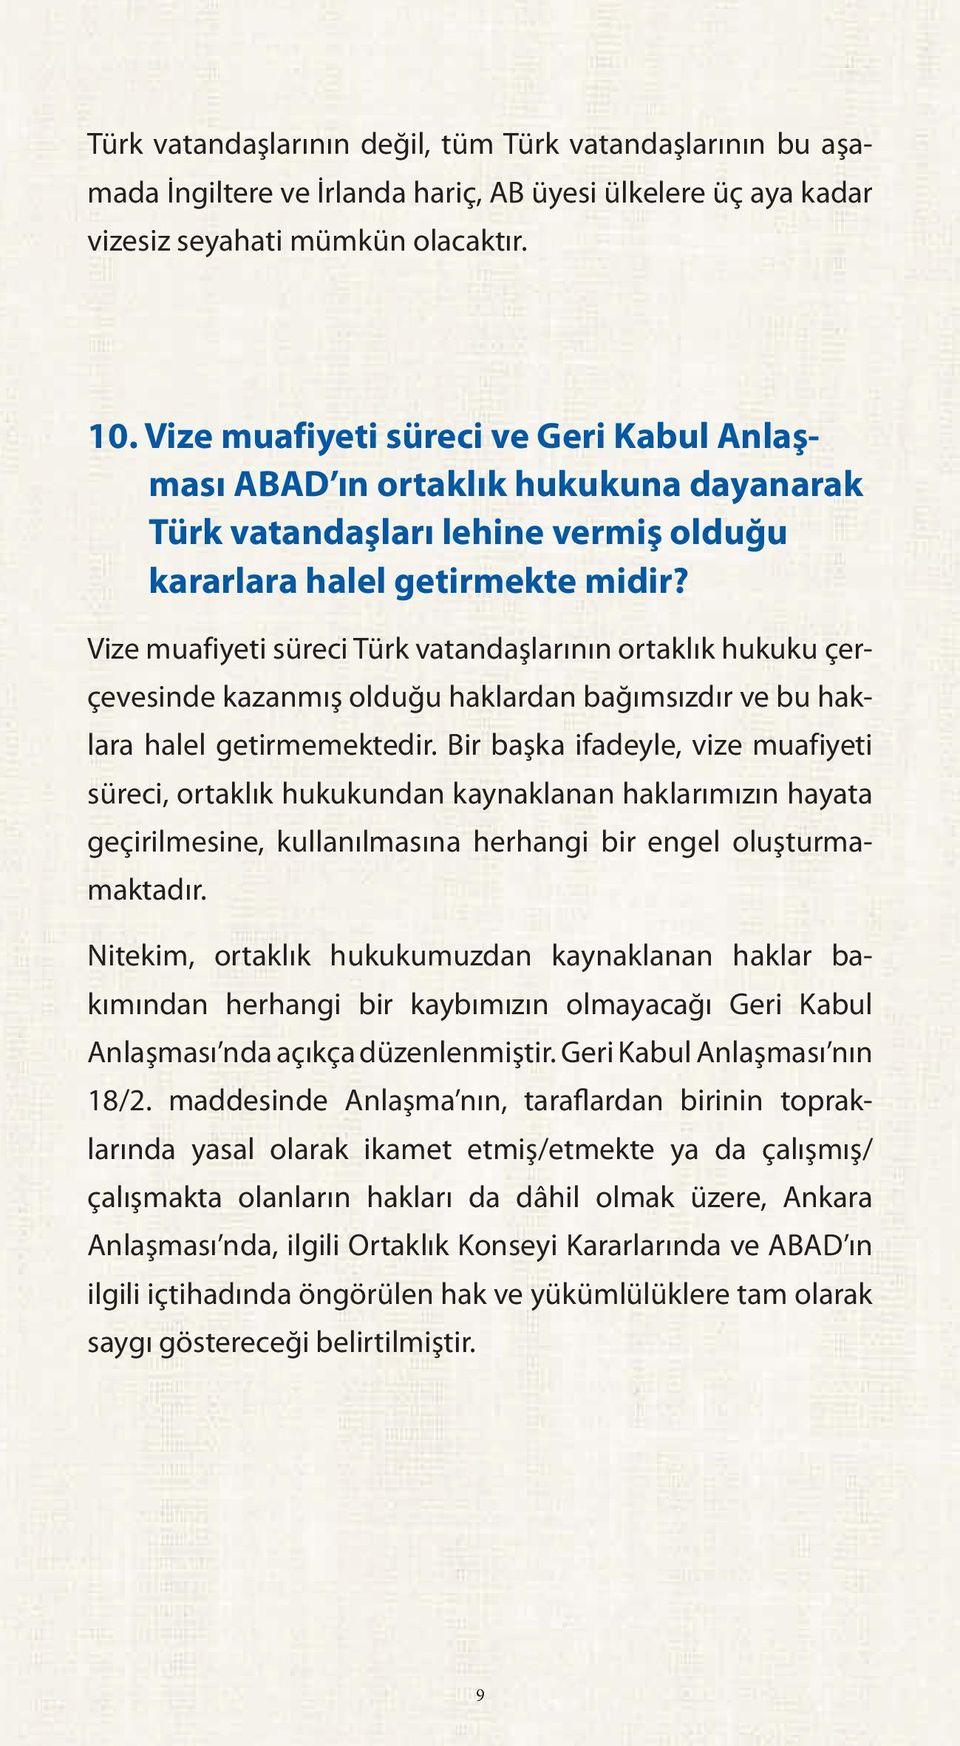 Vize muafiyeti süreci Türk vatandaşlarının ortaklık hukuku çerçevesinde kazanmış olduğu haklardan bağımsızdır ve bu haklara halel getirmemektedir.